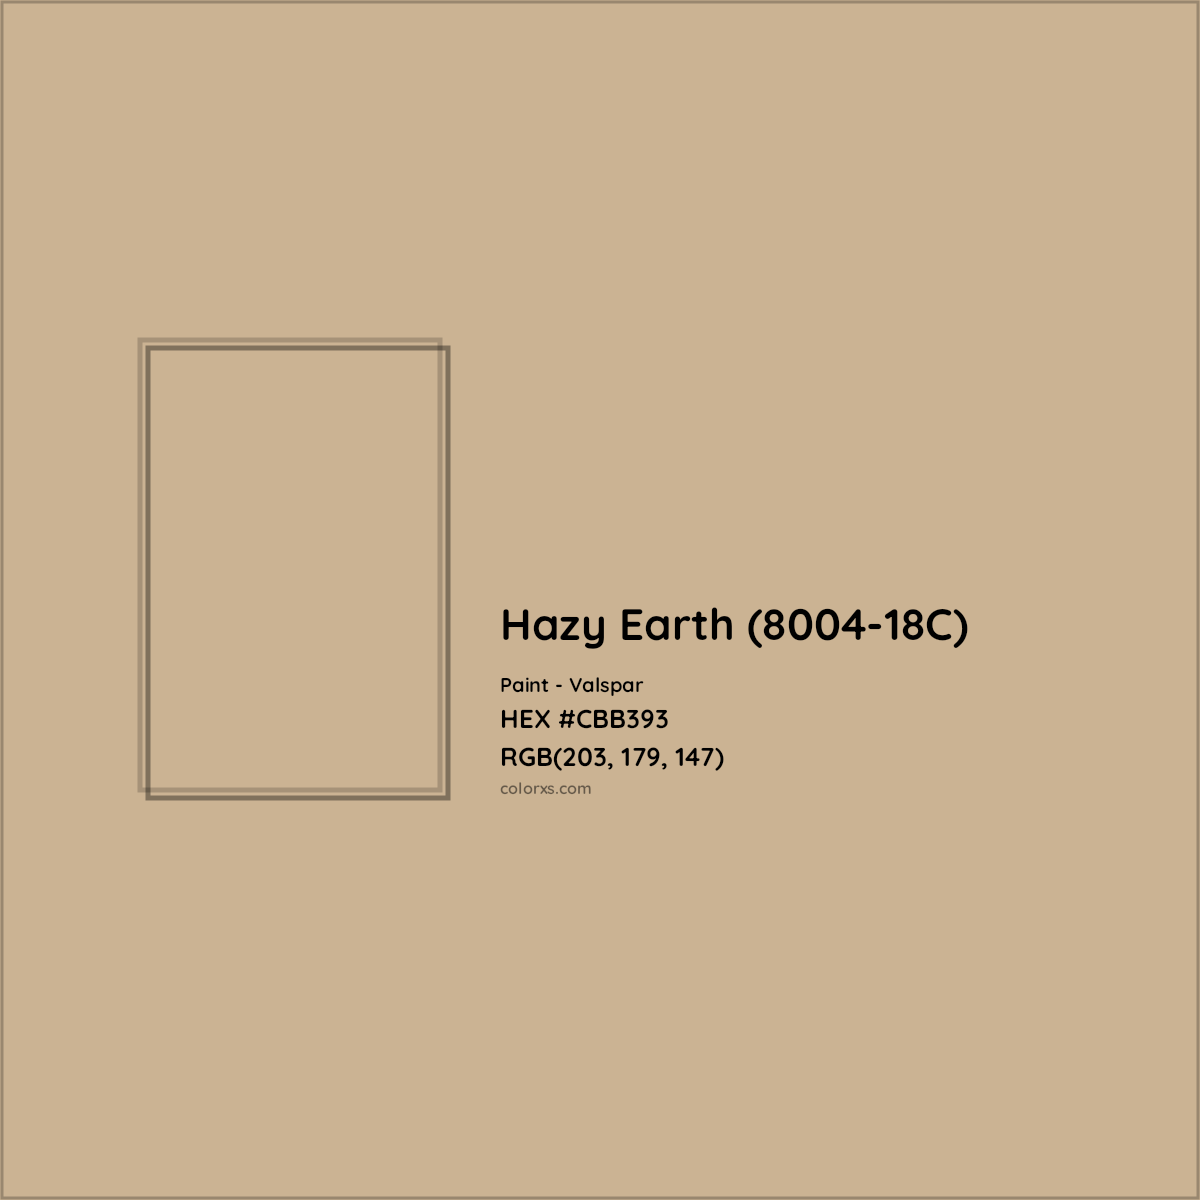 HEX #CBB393 Hazy Earth (8004-18C) Paint Valspar - Color Code